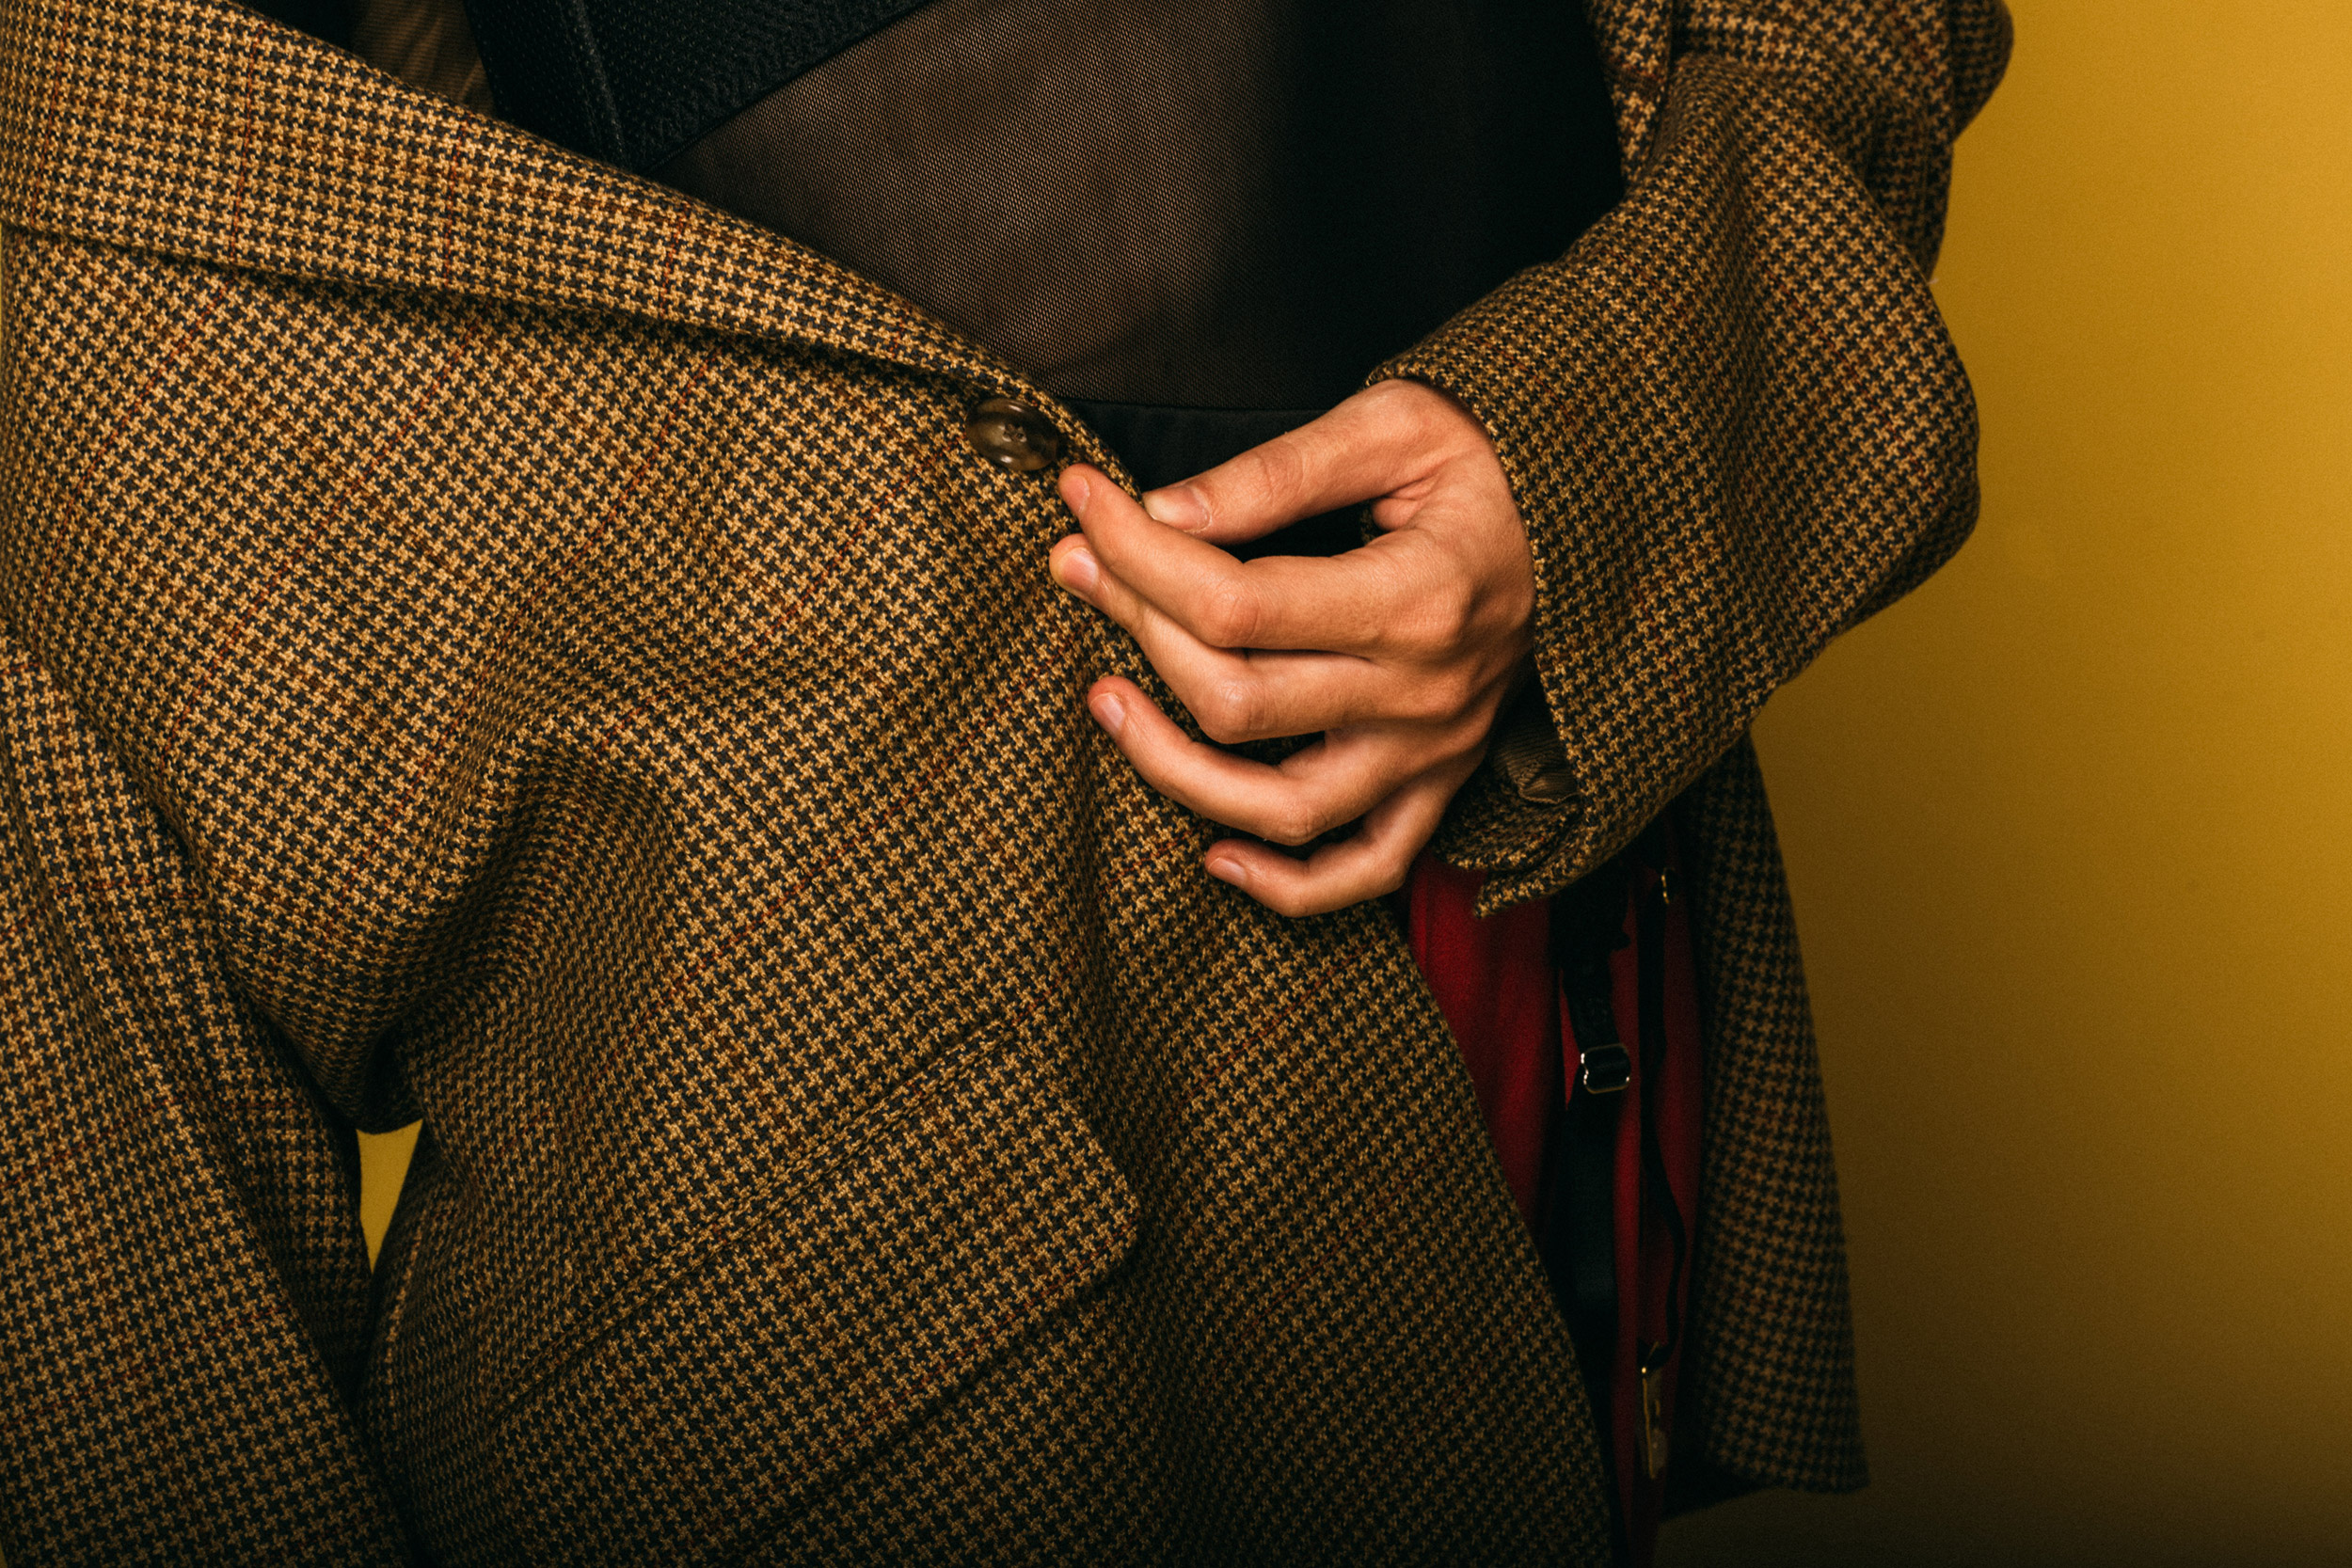 Нижнее бельё в качестве верхней одежды: Бюстгальтер, сетчатое платье, винтажный пиджак, «мужские» штаны и пояс для чулок. Фото garterblog.ru Все права защищены